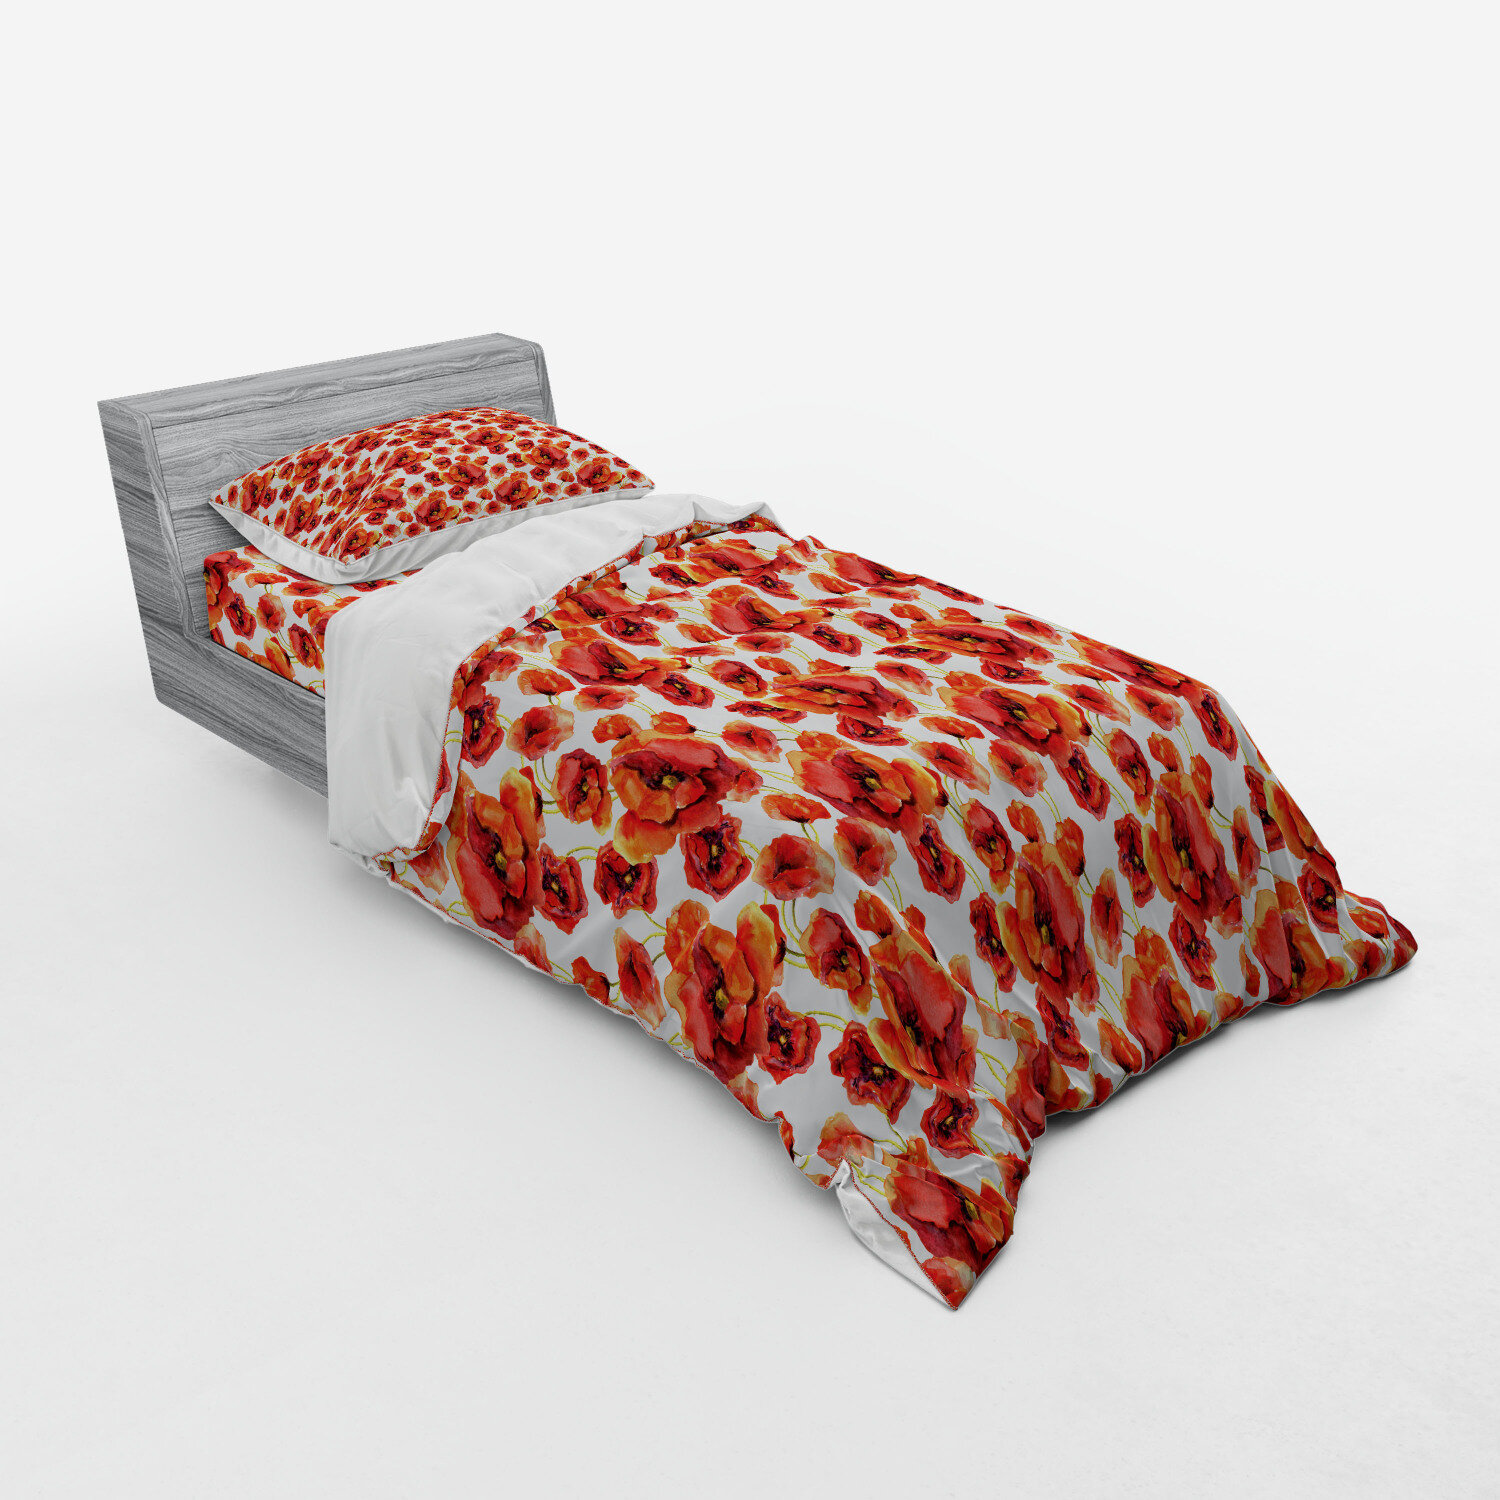 Poppy Duvet Cover Set With Pillow Shams Spring Flowers Romantic Print